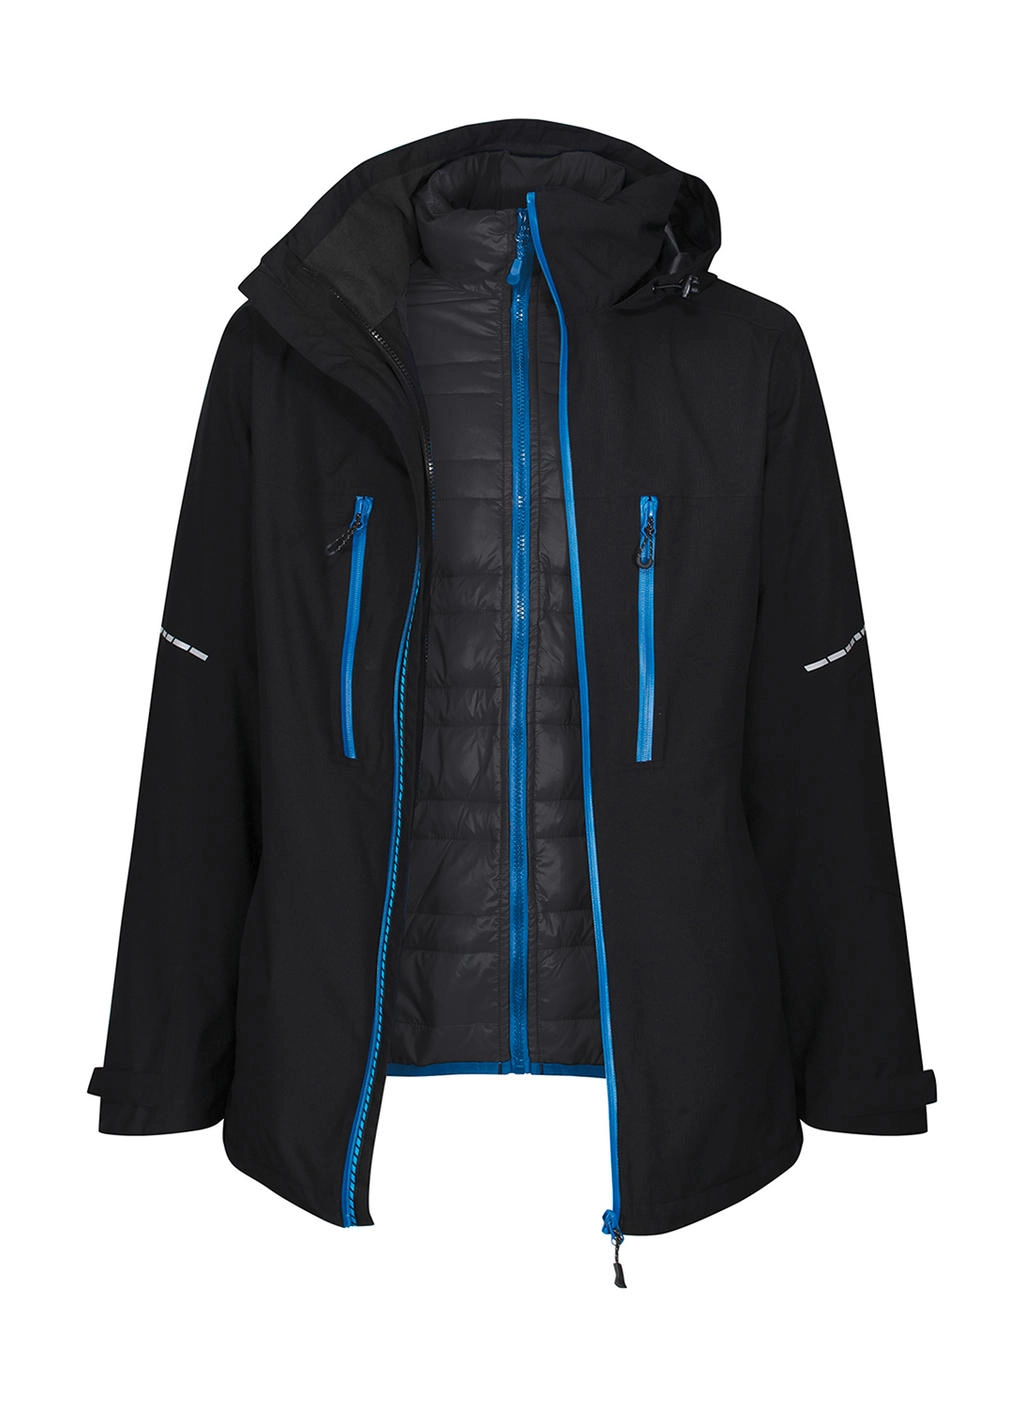 X-Pro Evader III 3 in1 Jacket zum Besticken und Bedrucken in der Farbe Black/Oxford Blue mit Ihren Logo, Schriftzug oder Motiv.